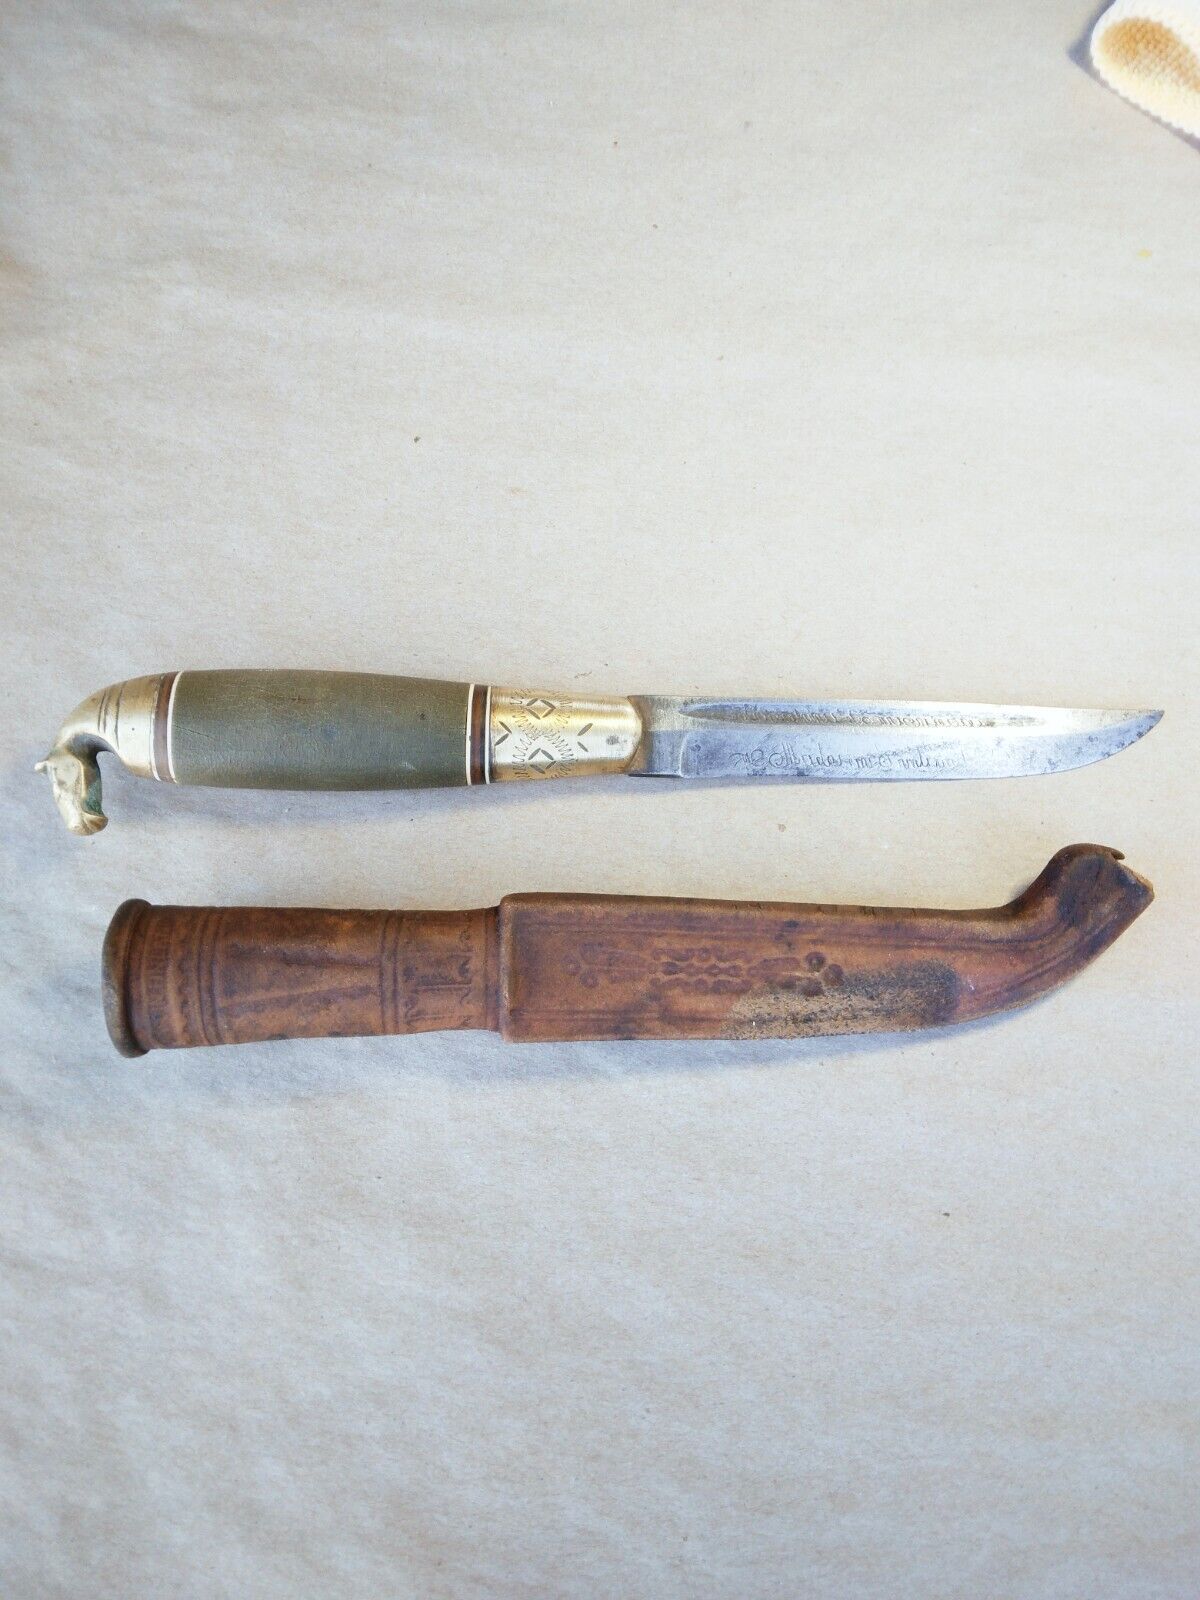 Vintage Lisakki Jarvenpaa Horsehead Puukko Fixed BLade Knife and Sheath